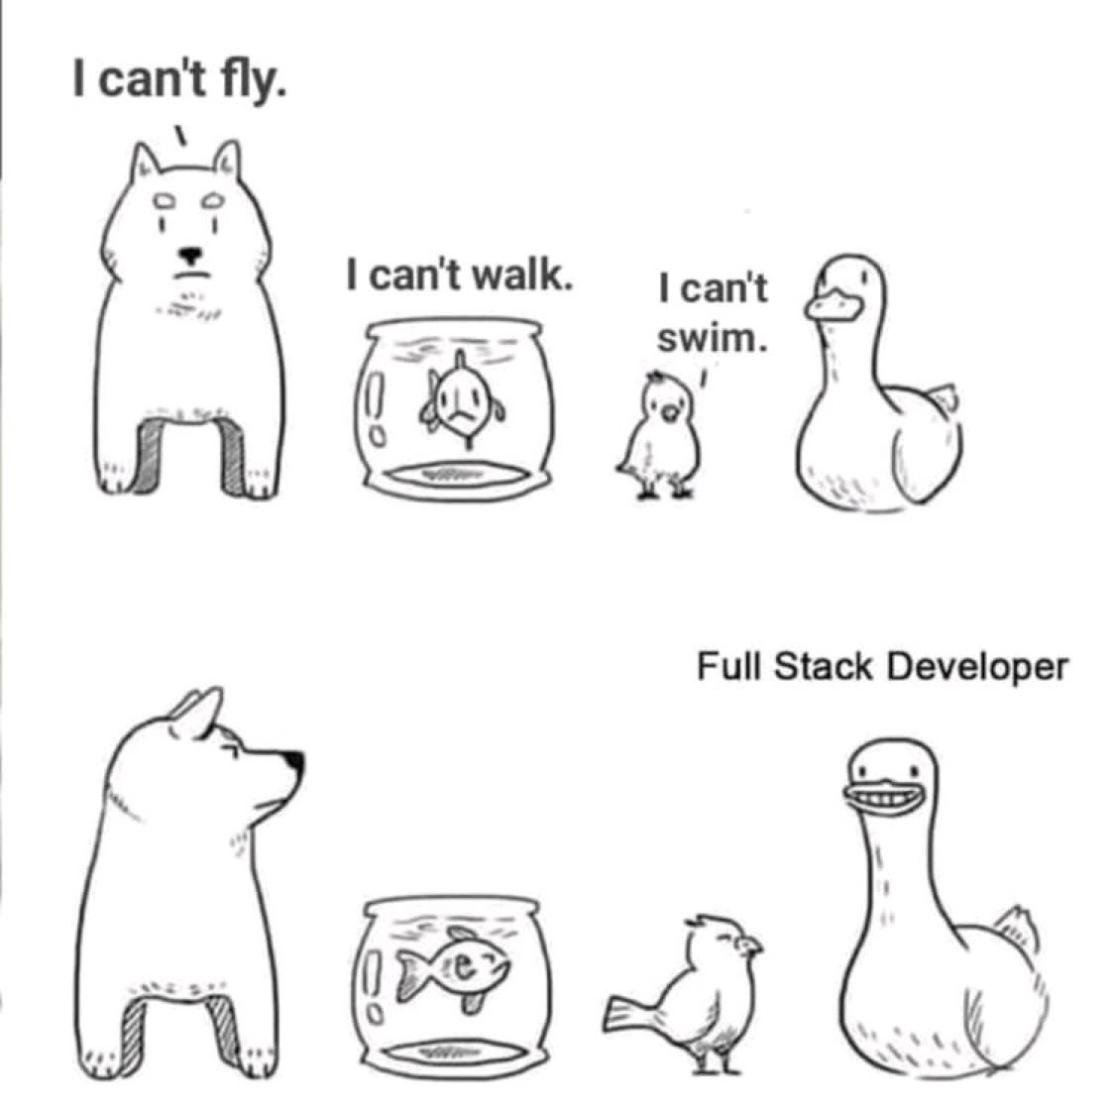 Full Stack Developer!!!

#fullstackdevelopment #FullStackWebDeveloper #ReactJS #CloudComputing #Linux #Coding #100DaysOfCode #Python #pythonprogramming #100daysofcodechallenge #javafullstack #pythondeveloper #pythonprogramming #programminglife #webdesignanddevelopment